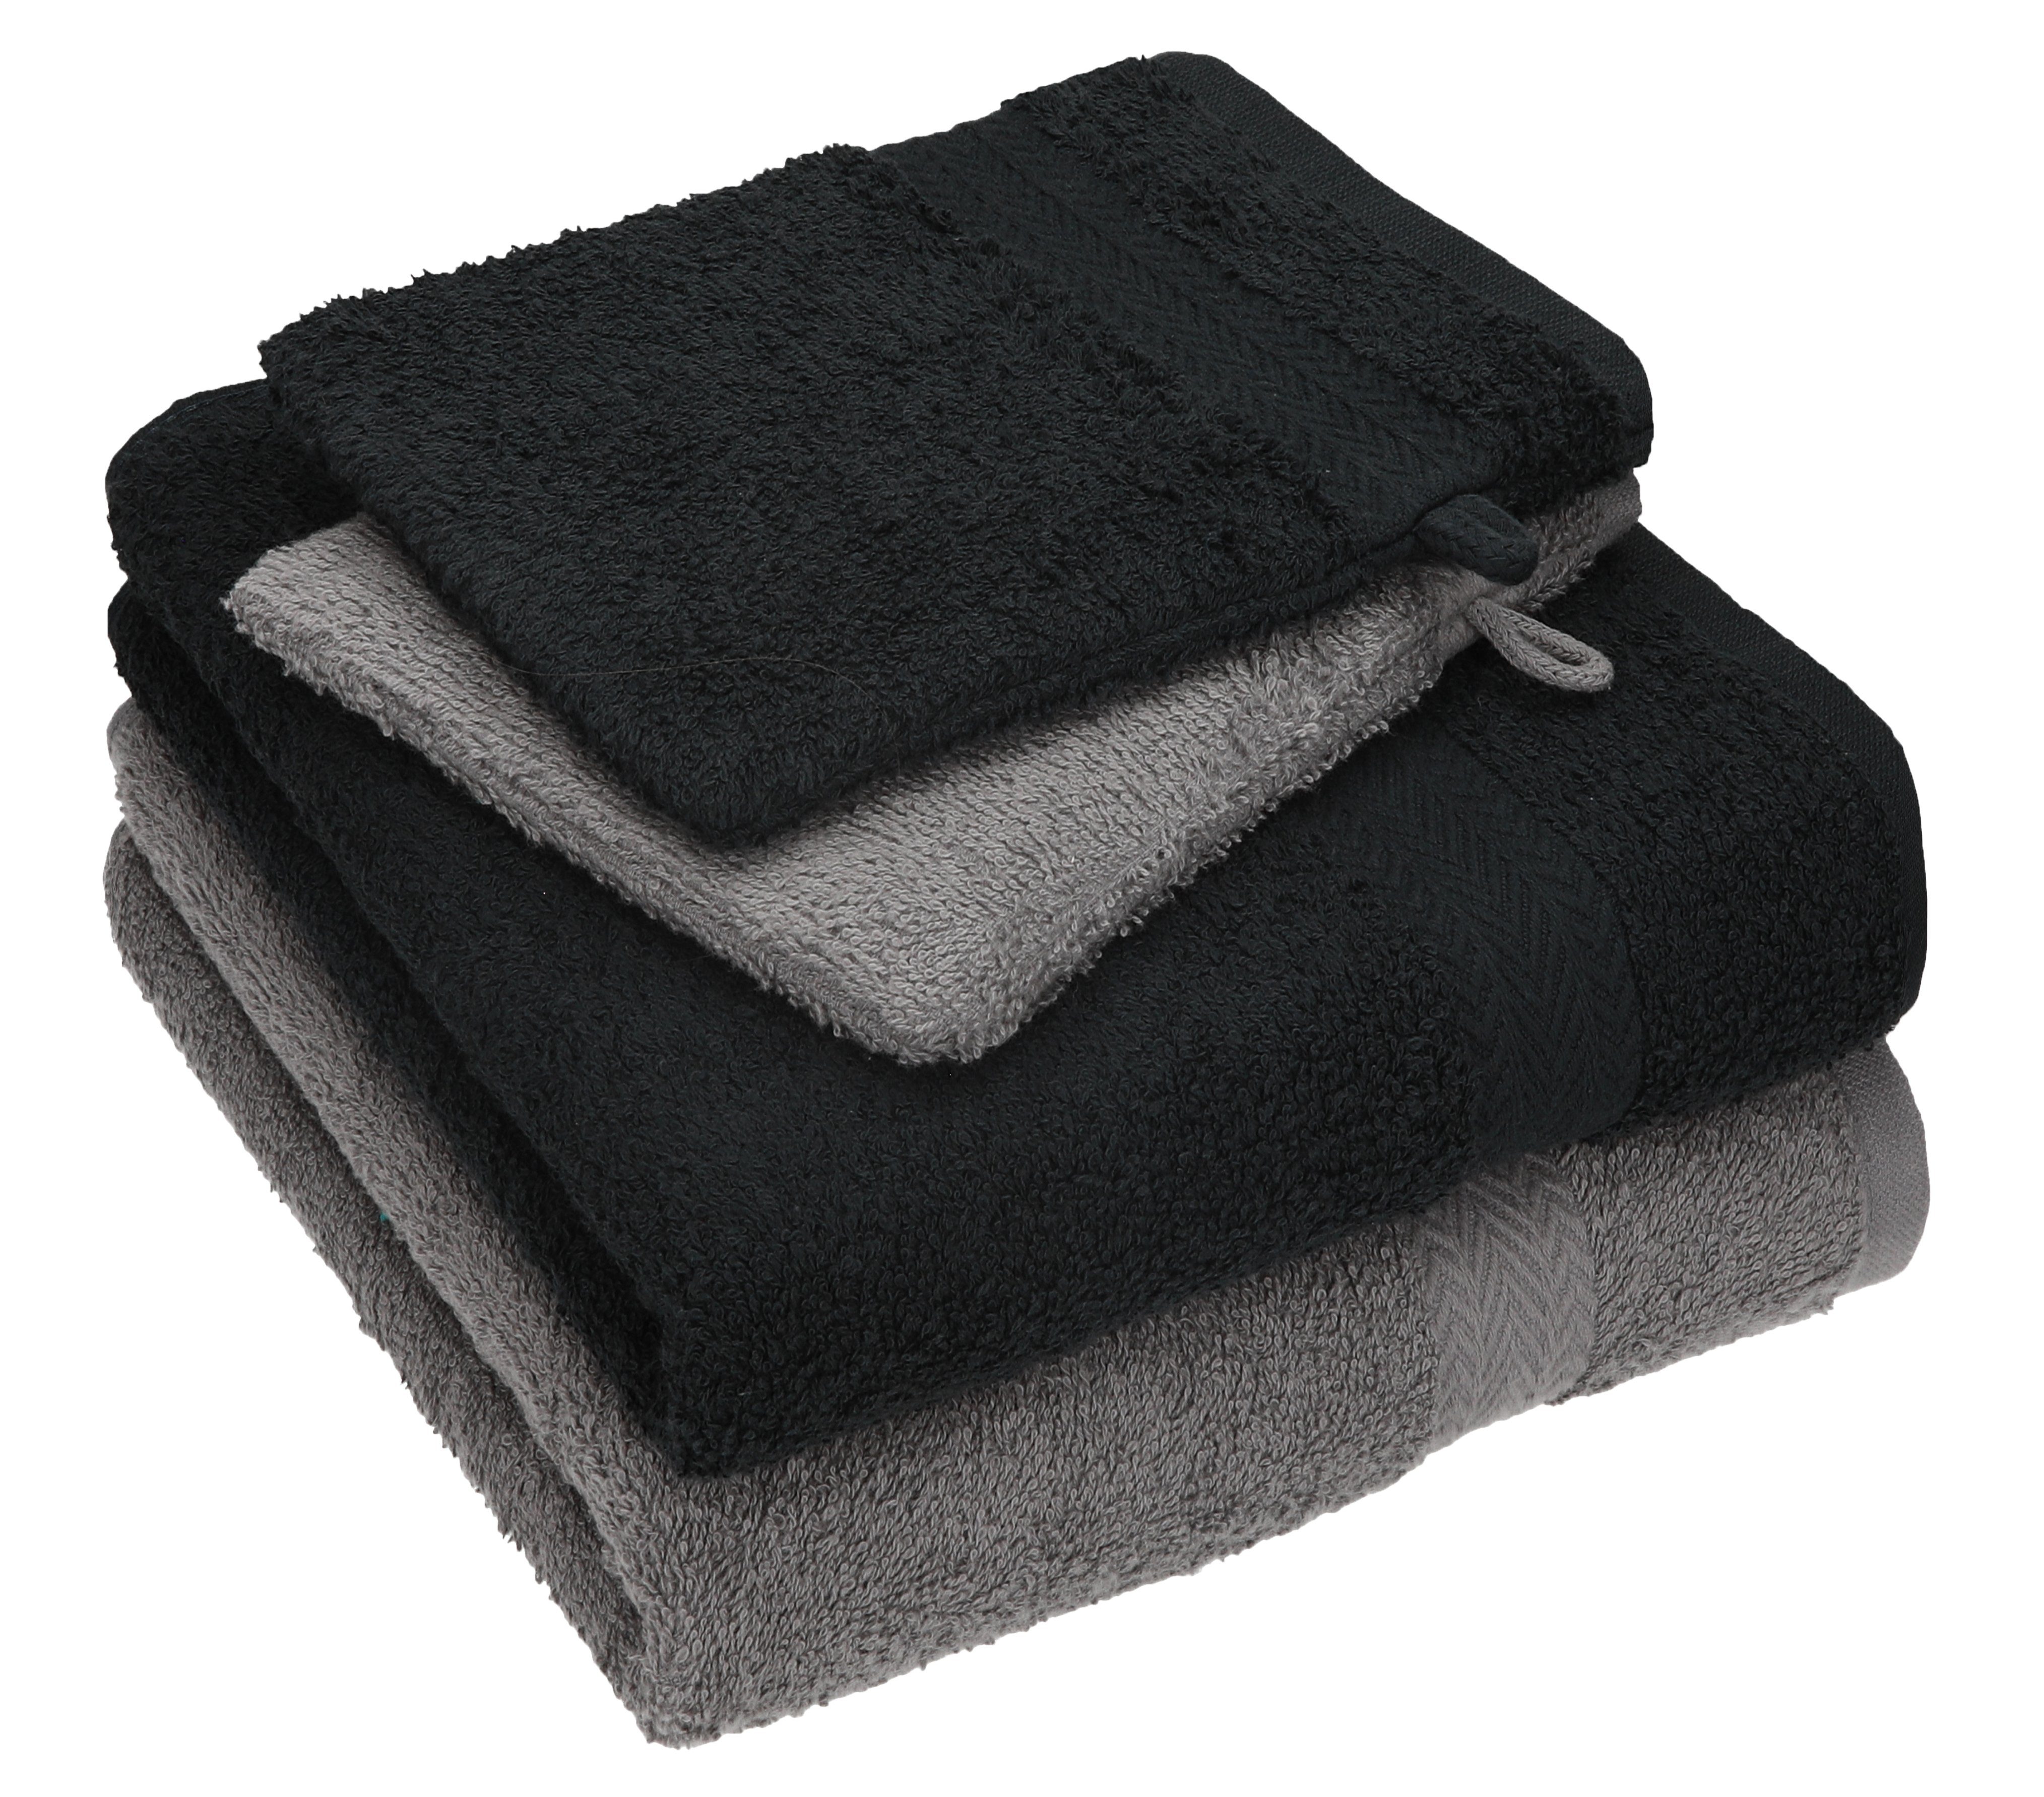 Betz Handtuch Set 4 TLG. Handtuch Set Happy Pack 100% Baumwolle 2 Handtücher 2 Waschhandschuhe, 100% Baumwolle anthrazit grau - schwarz